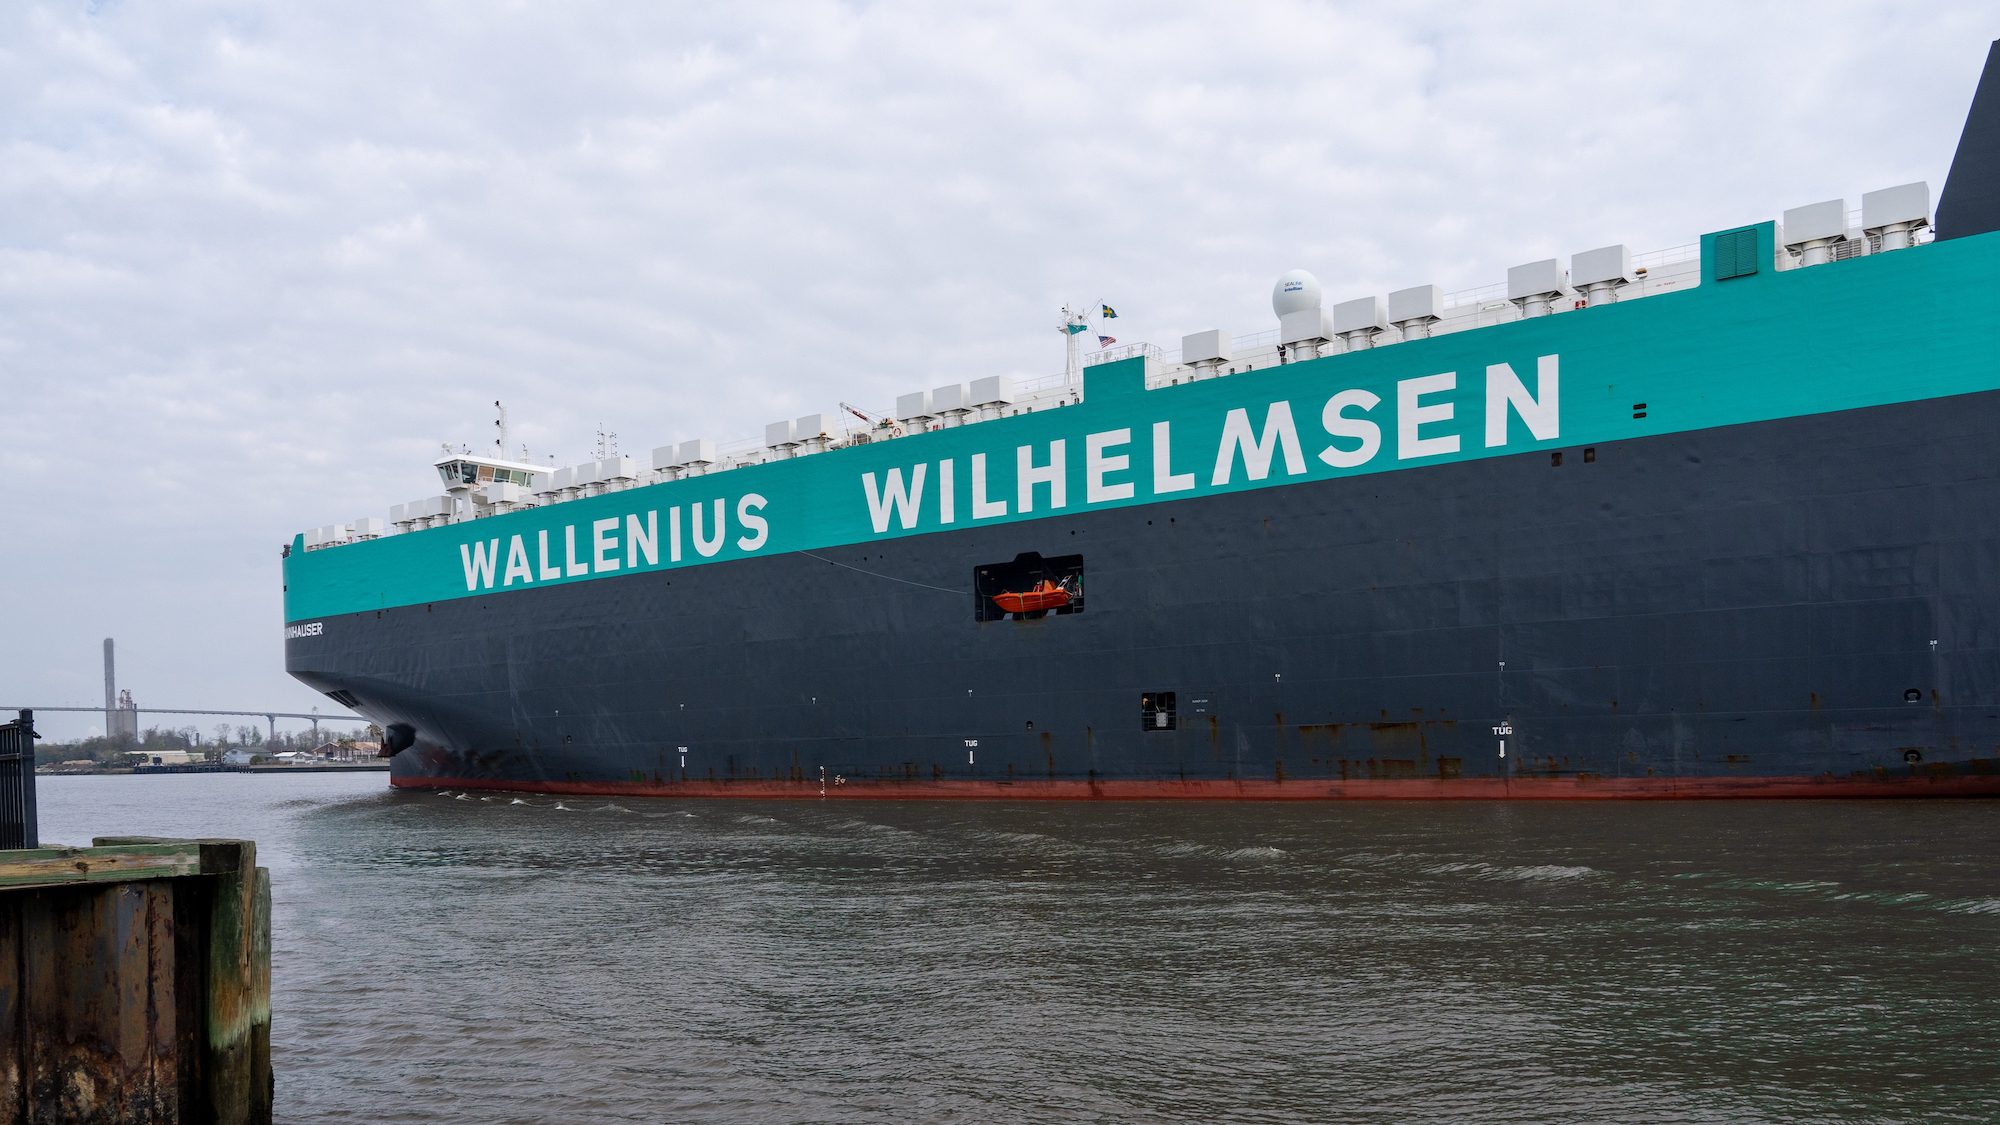 A Wallenius Wilhelmsen vessel in port